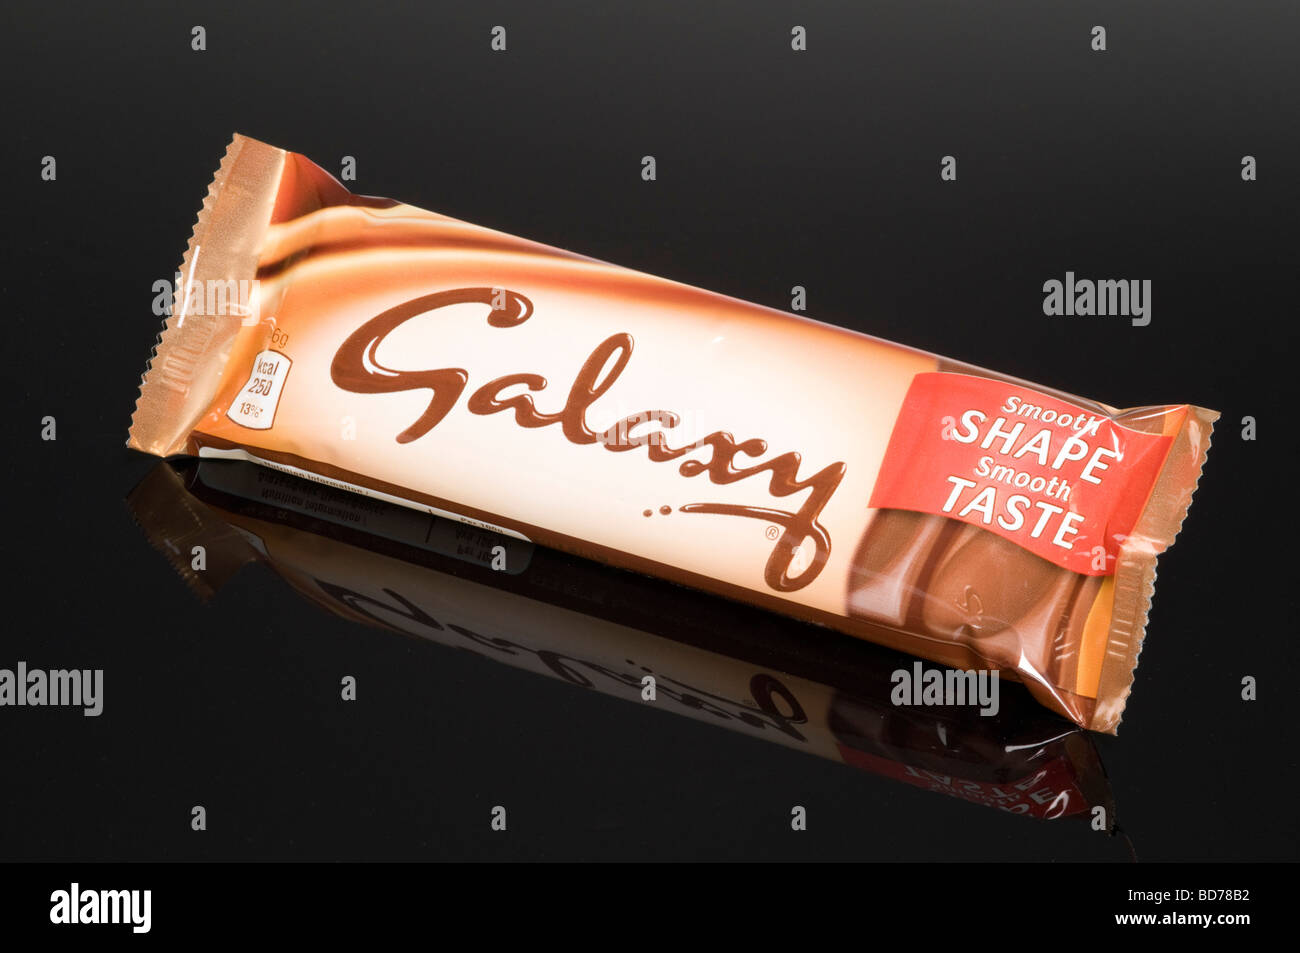 Galaxy-Schokoriegel auf schwarzem Hintergrund im Studio gedreht Stockfoto